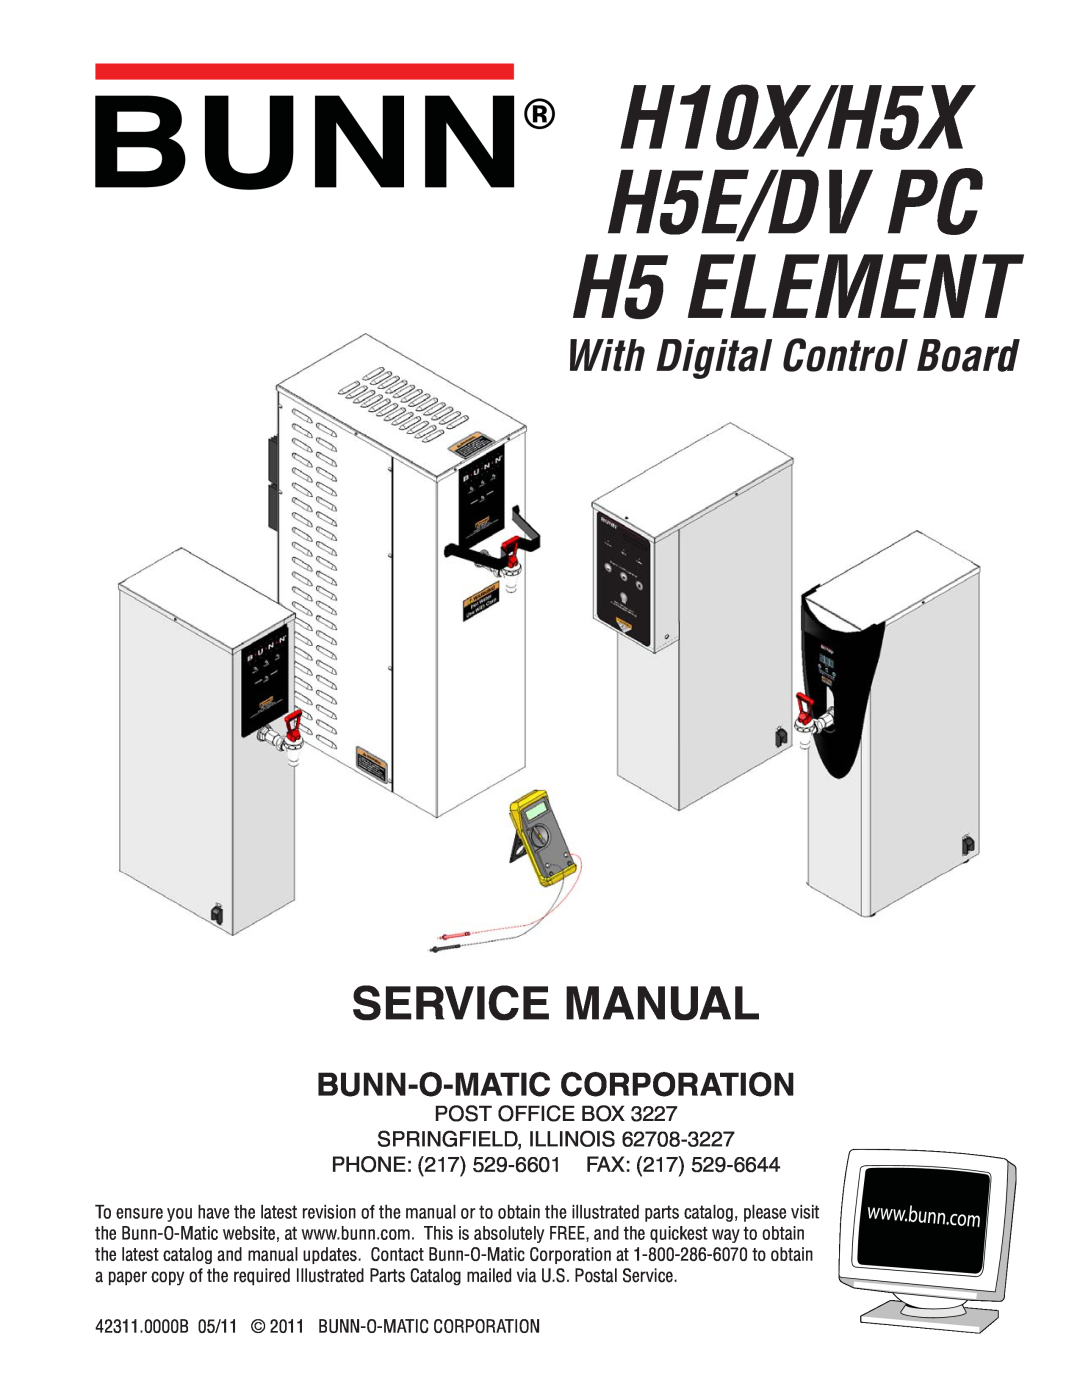 Bunn manual H10X/H5X H5E/DV PC, H5 ELEMENT, With Digital Control Board, Bunn-O-Matic Corporation 